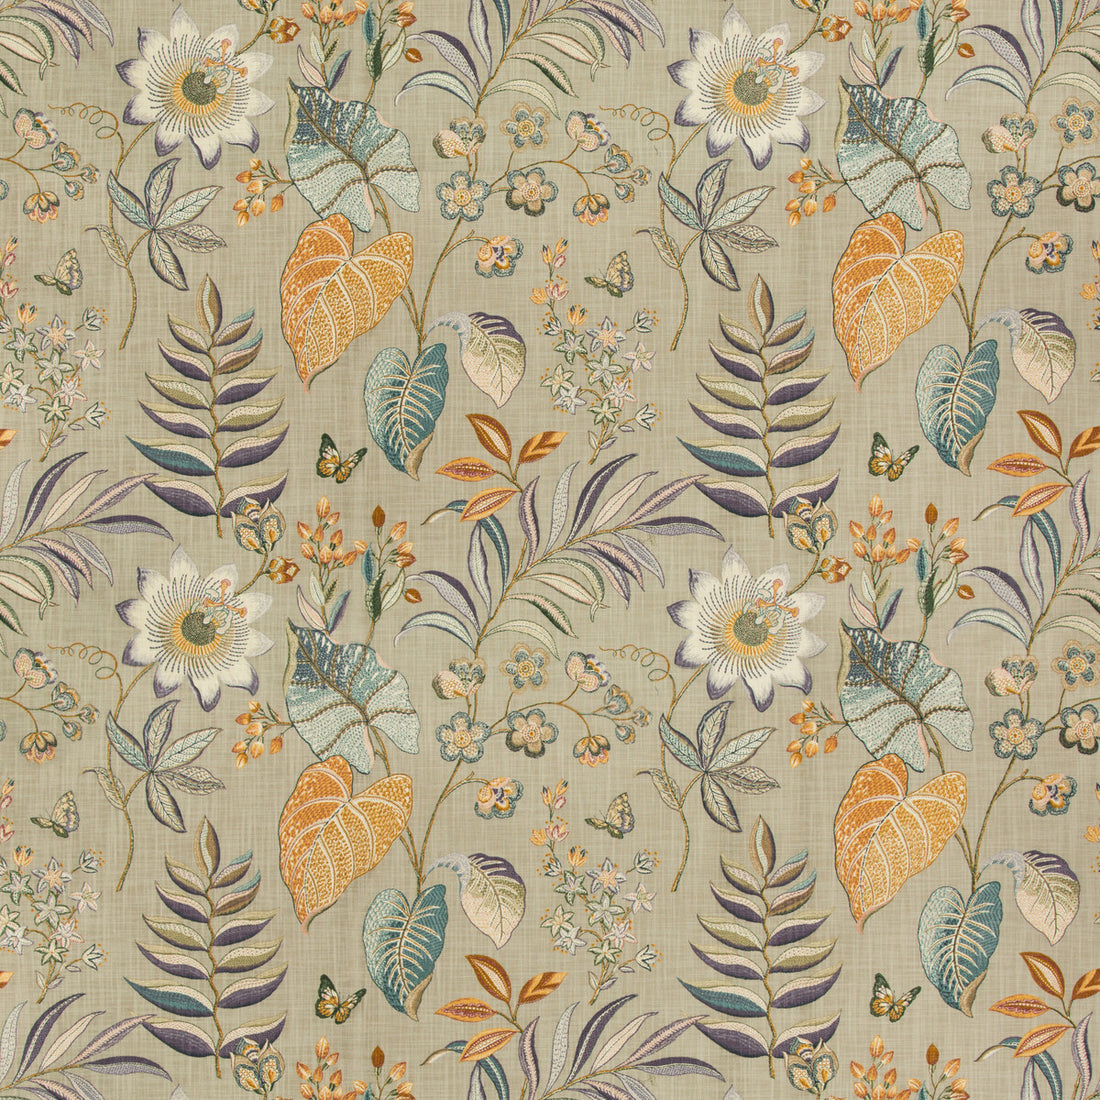 Bogor fabric in rye color - pattern BOGOR.16.0 - by Kravet Basics